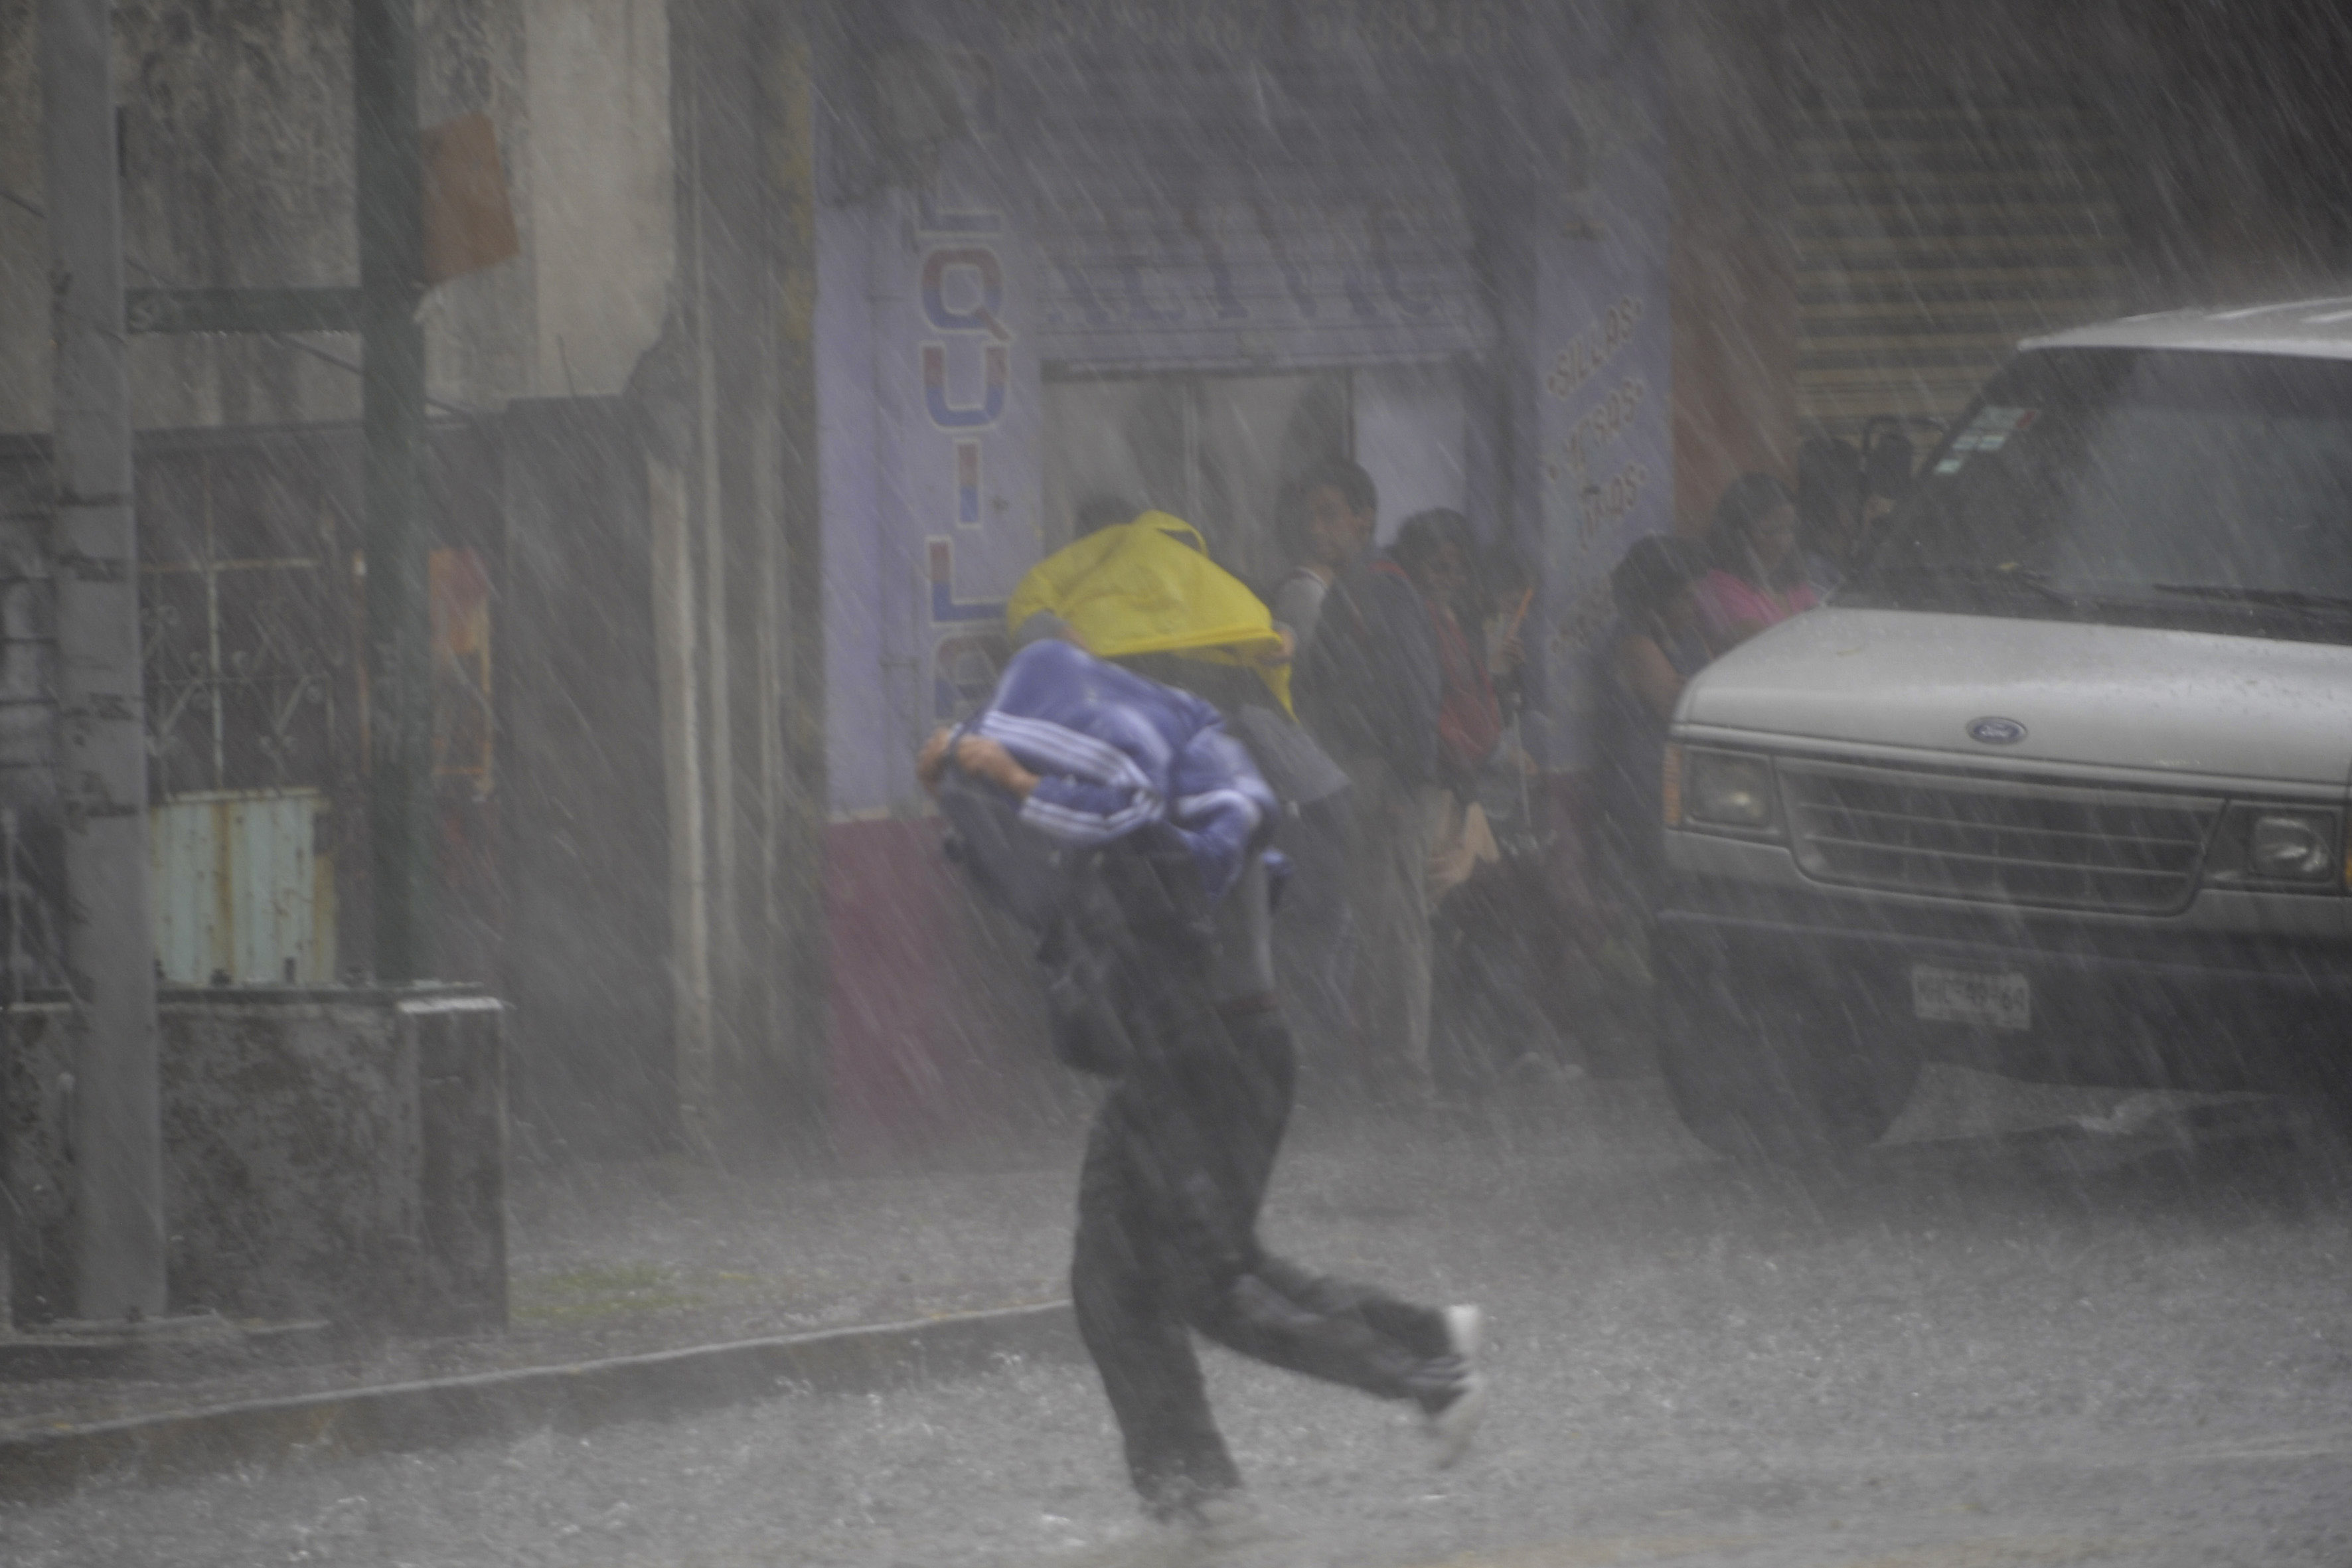  Se prevén lluvias fuertes en Jalisco, Michoacán y Guerrero